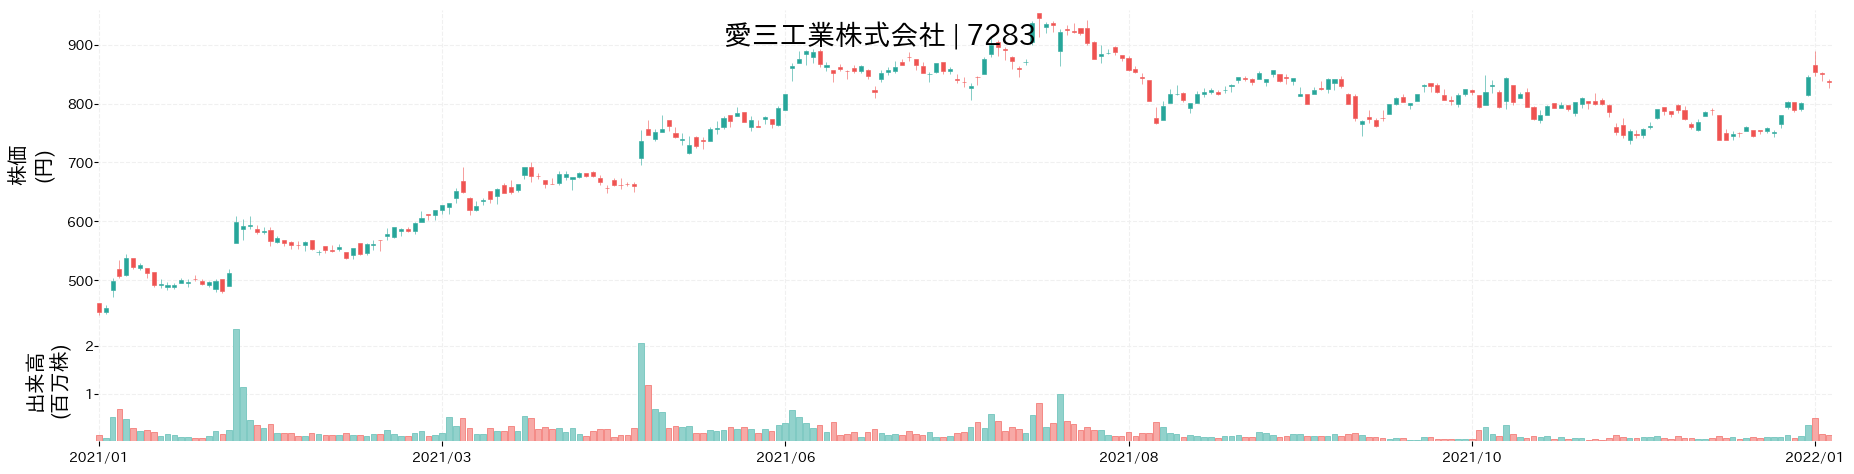 愛三工業の株価推移(2021)